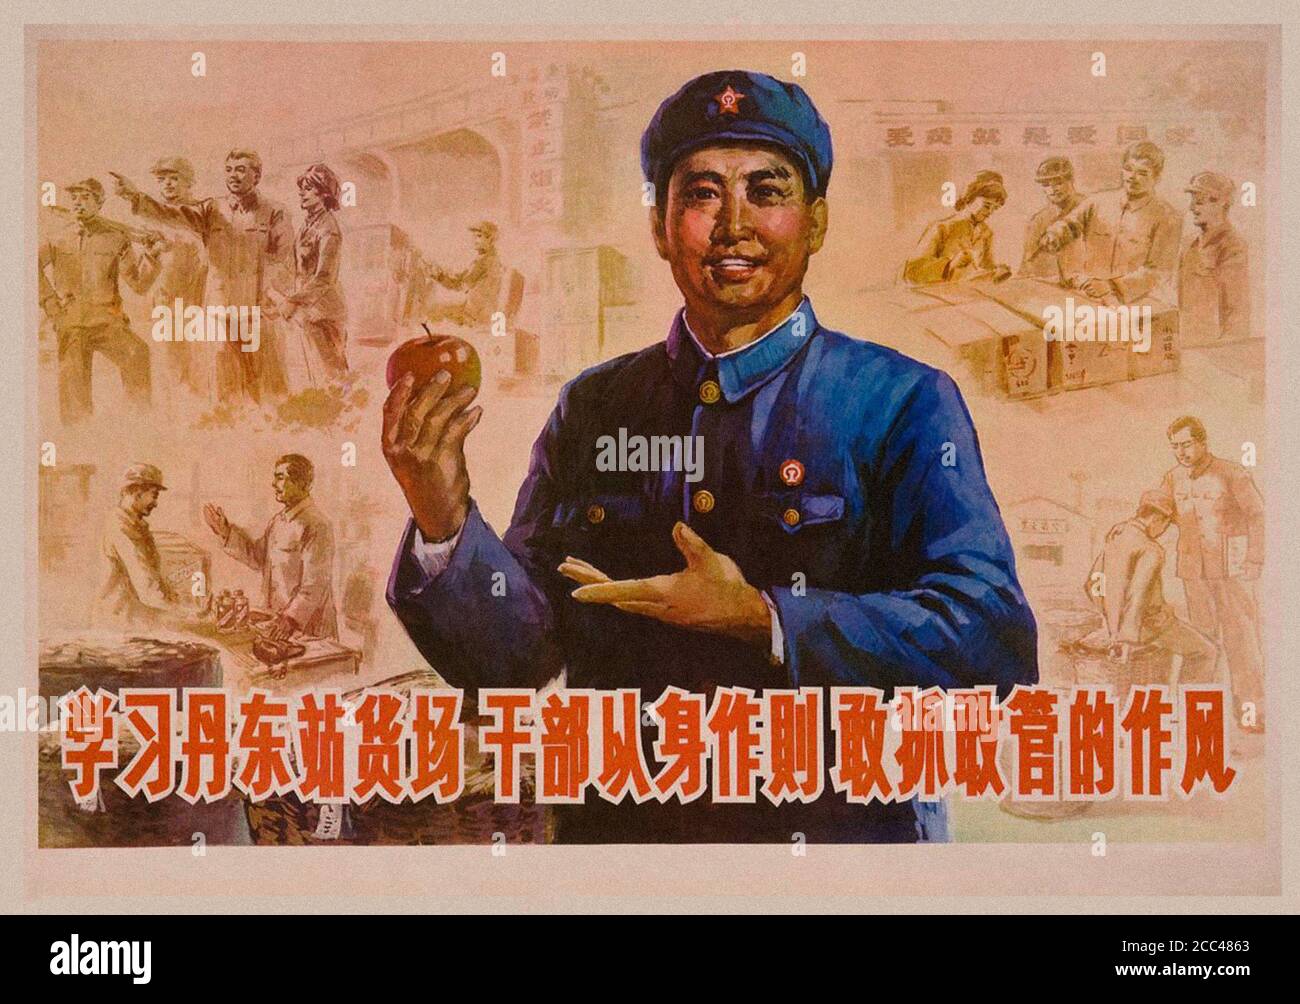 Cartel de propaganda retro del Partido Comunista Chino. China. 1950-1960 Foto de stock